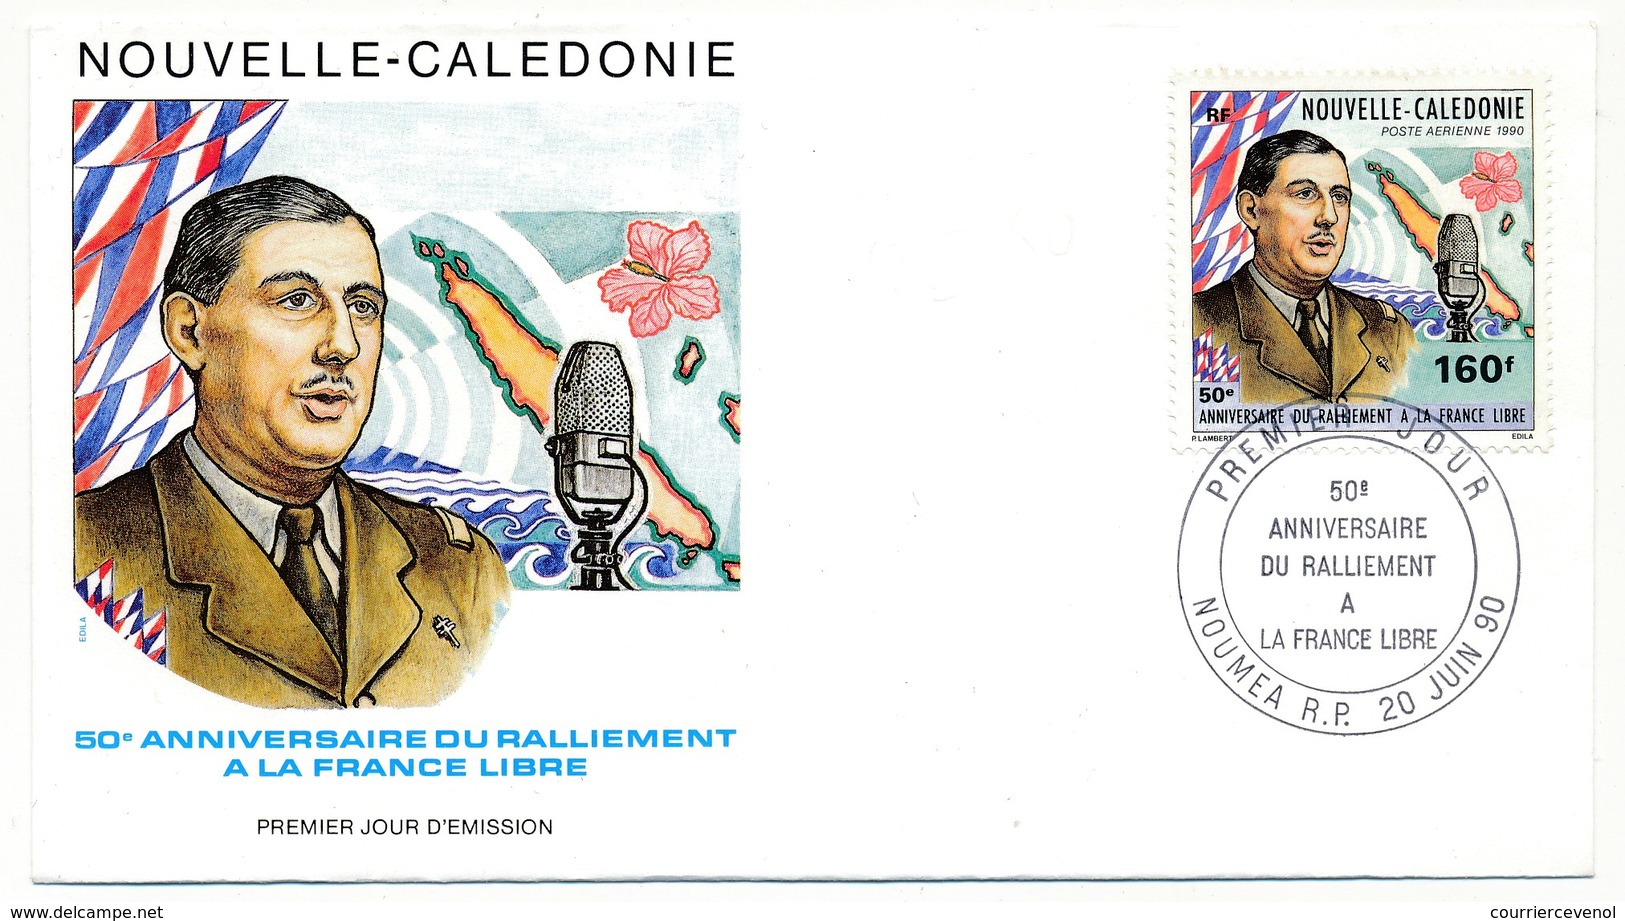 NOUVELLE CALEDONIE -  Enveloppe FDC - 50eme Anniversaire Du Ralliement à La France Libre - NOUMEA 20/06/1990 - De Gaulle (General)